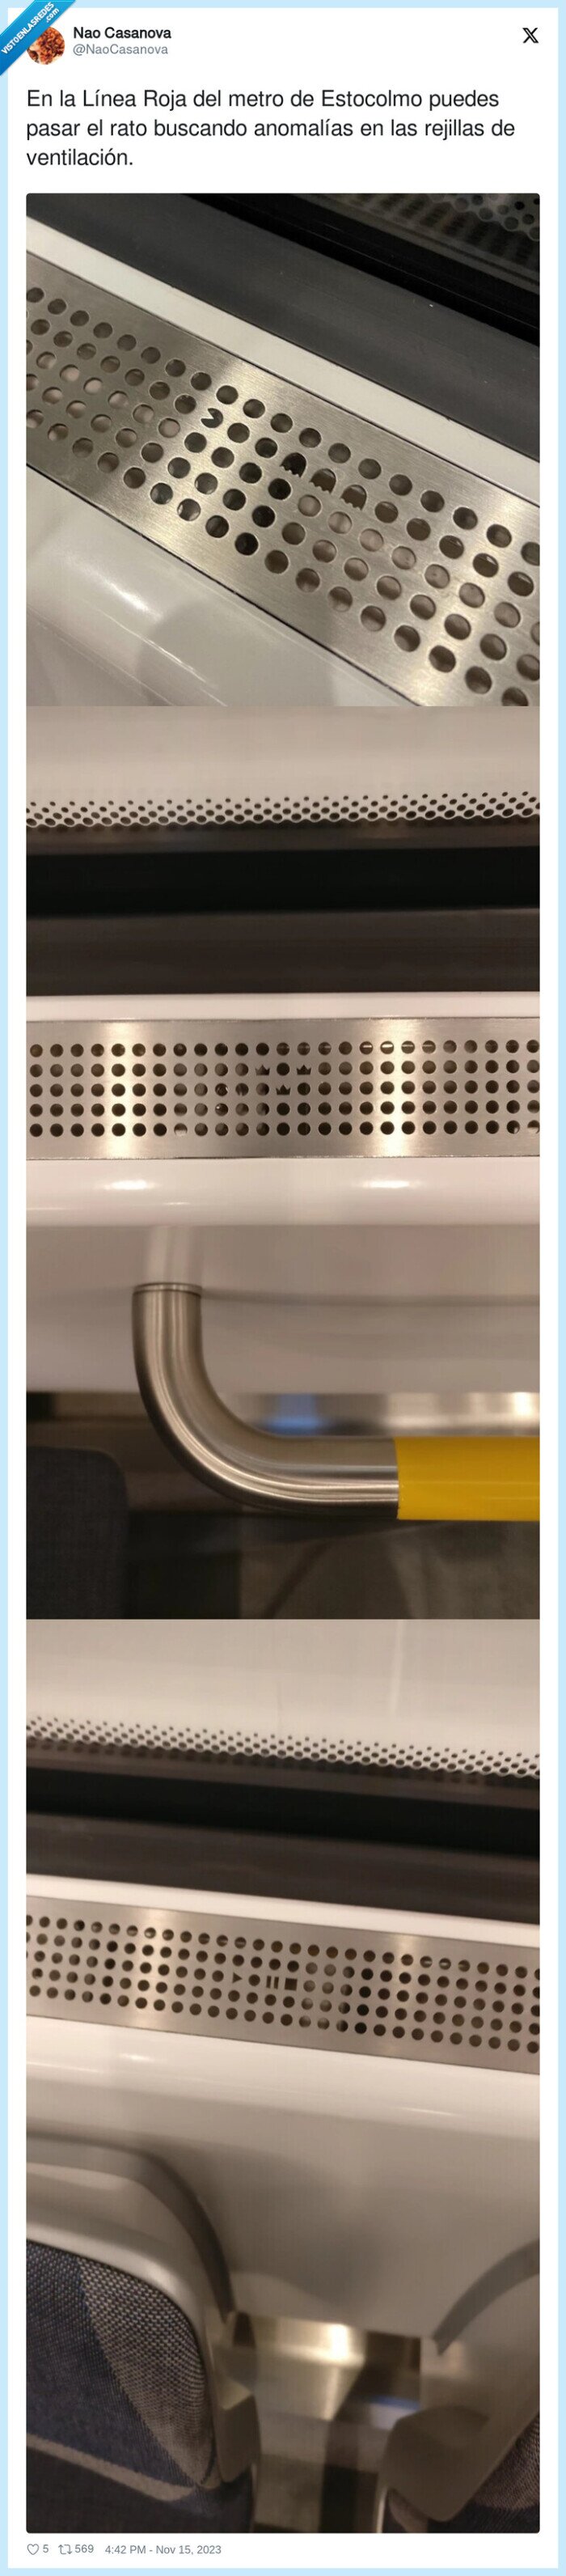 1481741 - En la Línea Roja del metro de Estocolmo puedes pasar el rato buscando anomalías en las rejillas de ventilación